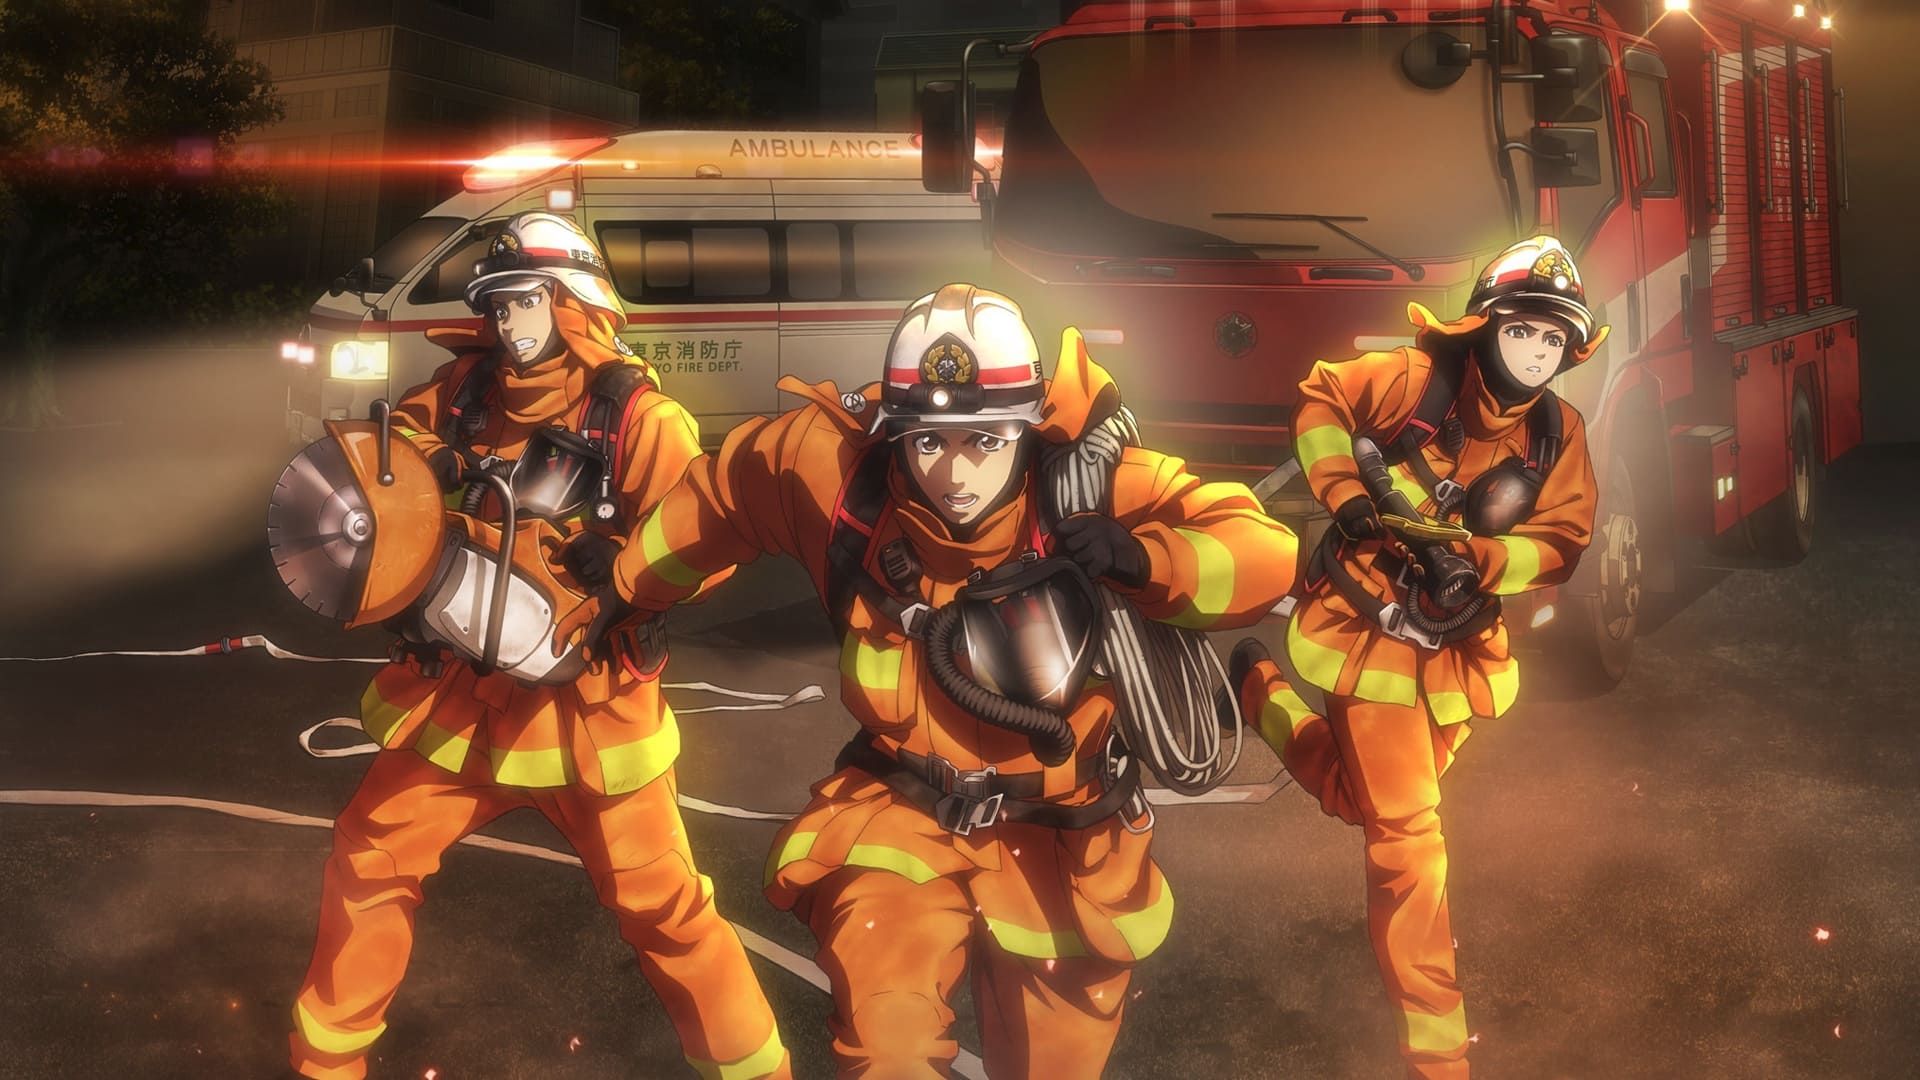 Cubierta de Firefighter Daigo: Rescuer in Orange